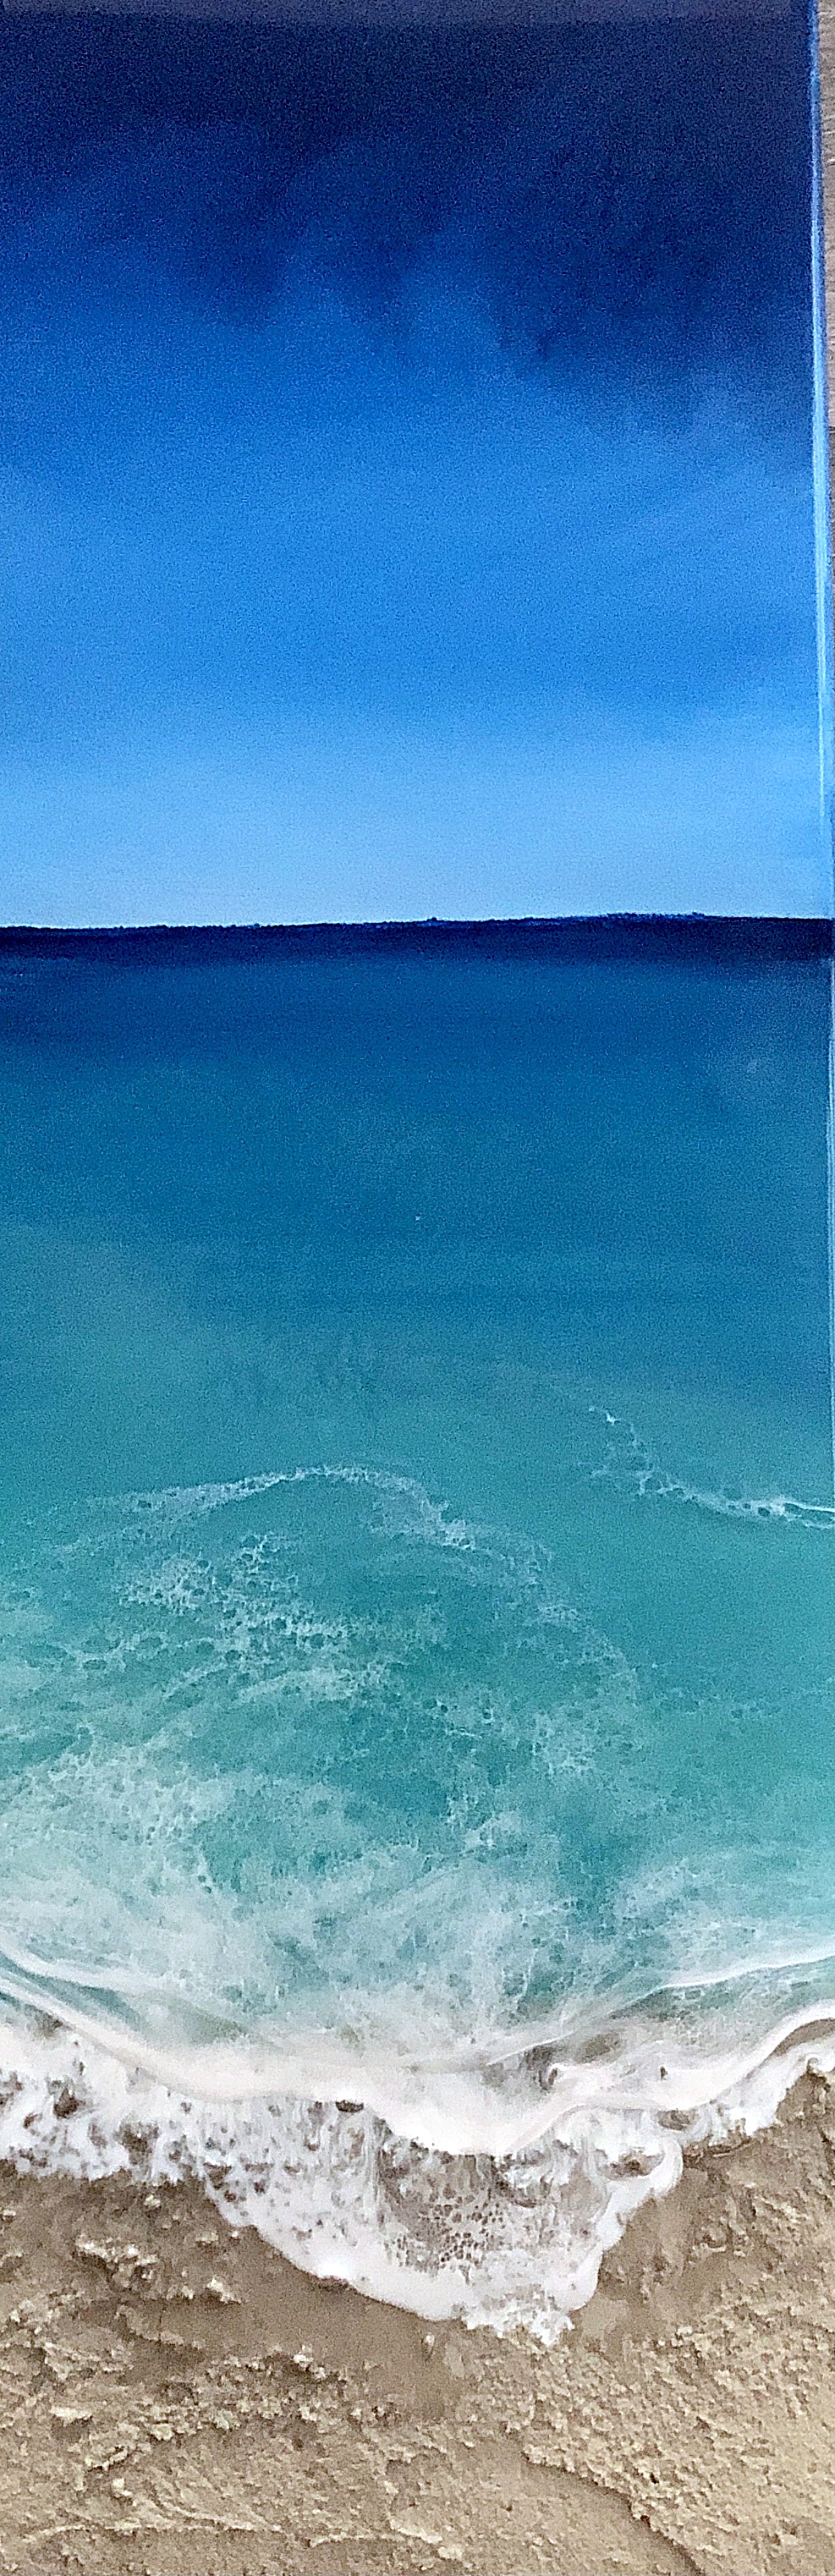 Ocean Waves #18 by Ana Hefco